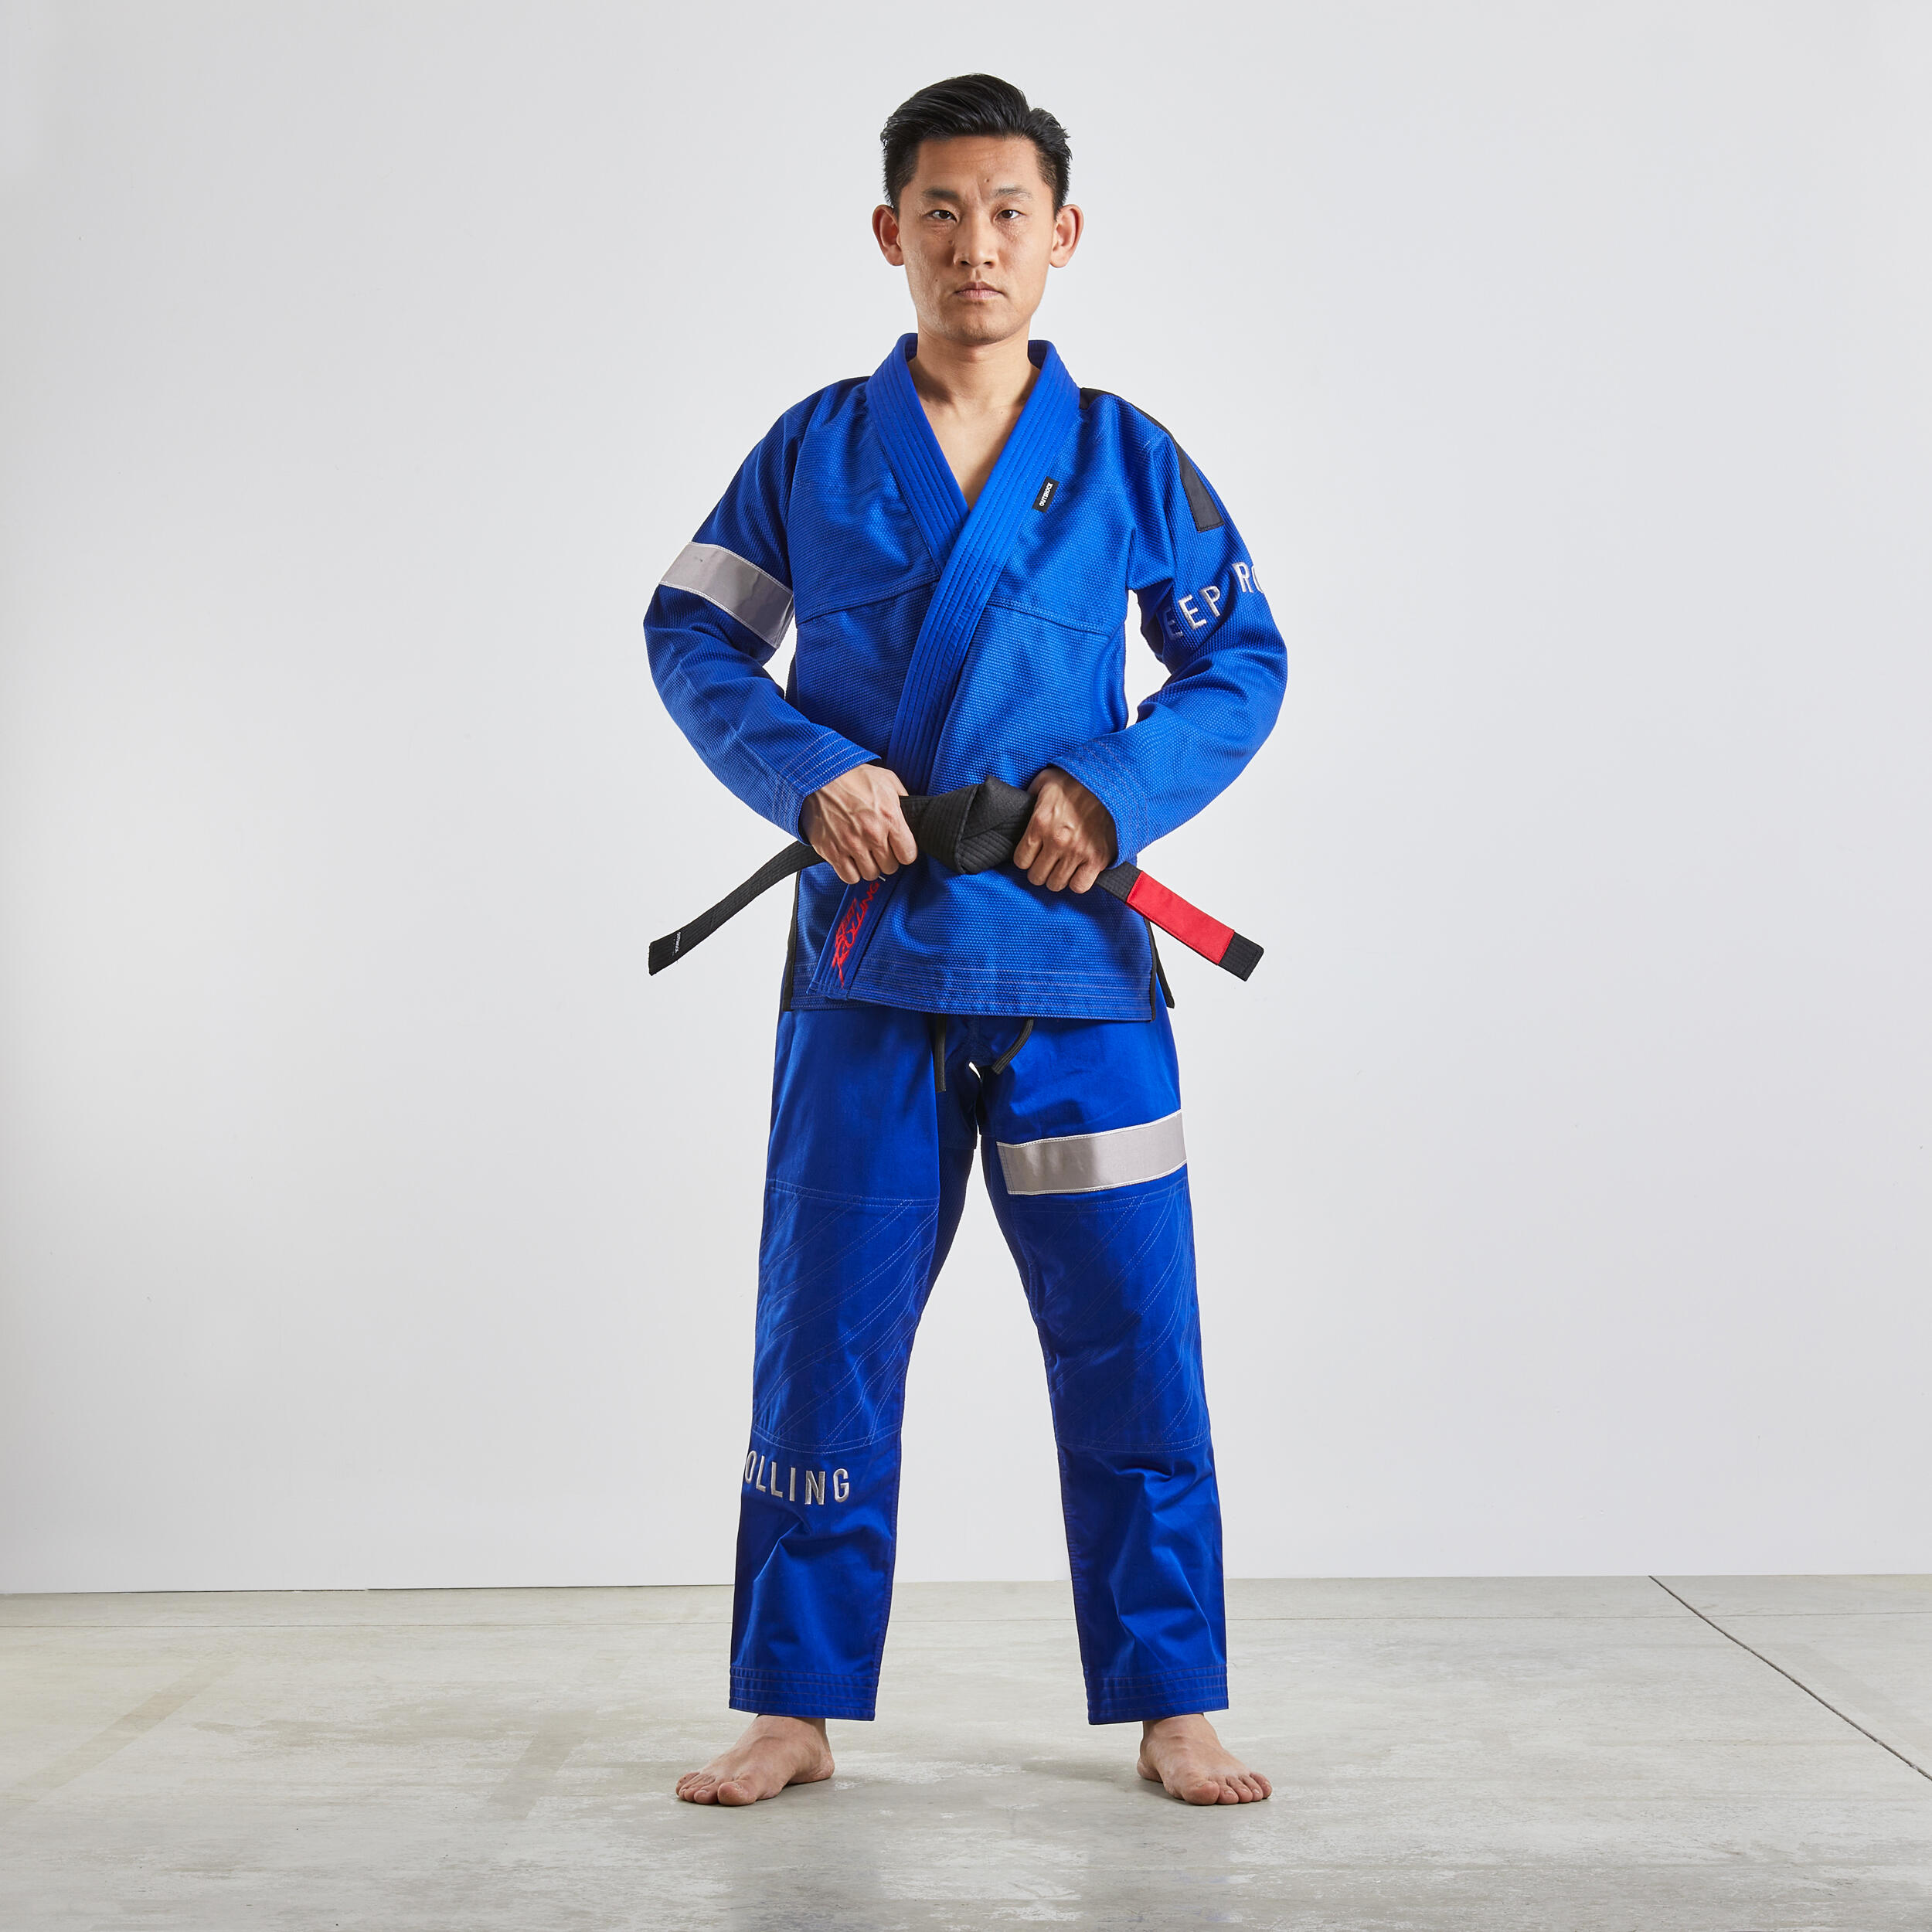 500 Brazilian Jiu-Jitsu Adult Uniform - Blue 4/9